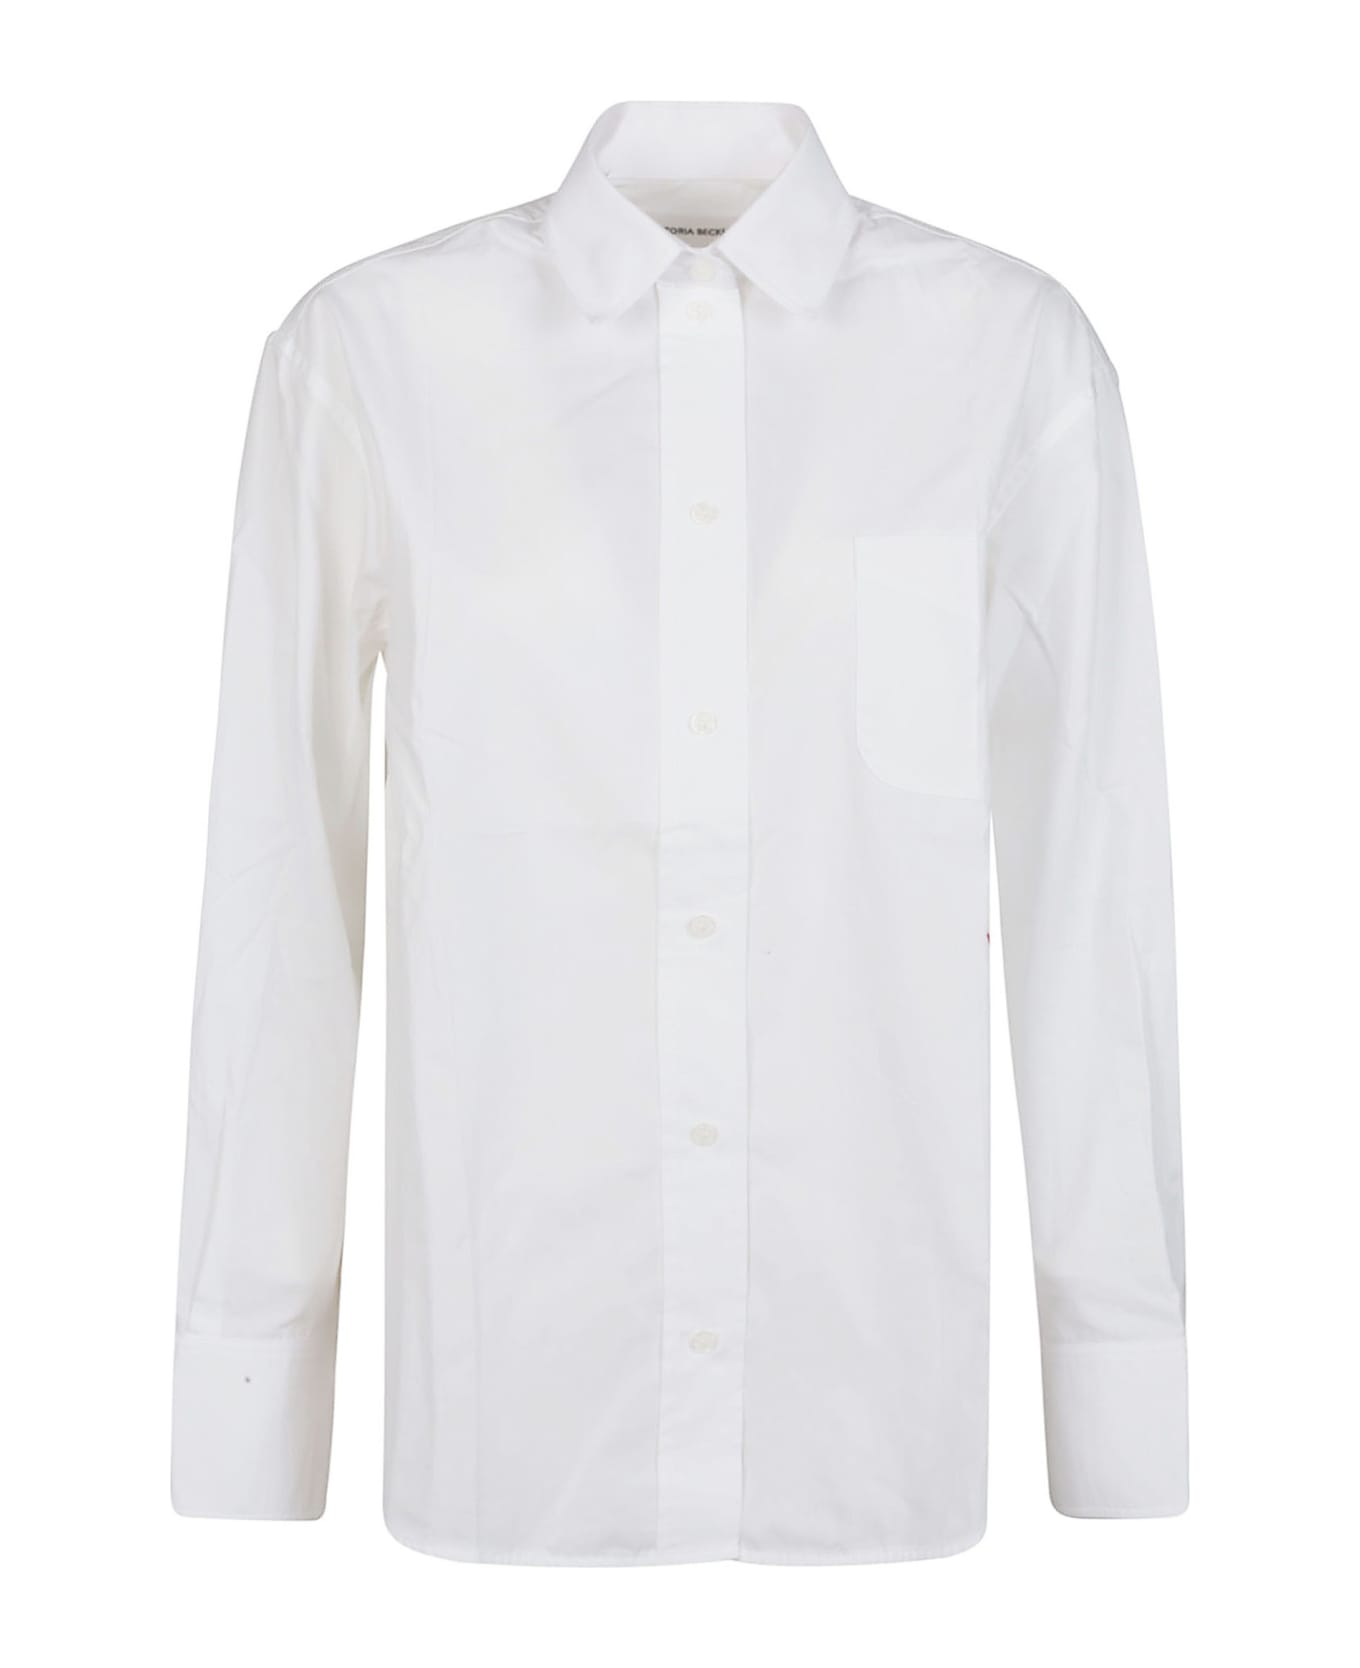 Victoria Beckham Oversized Long Sleeve Shirt - White